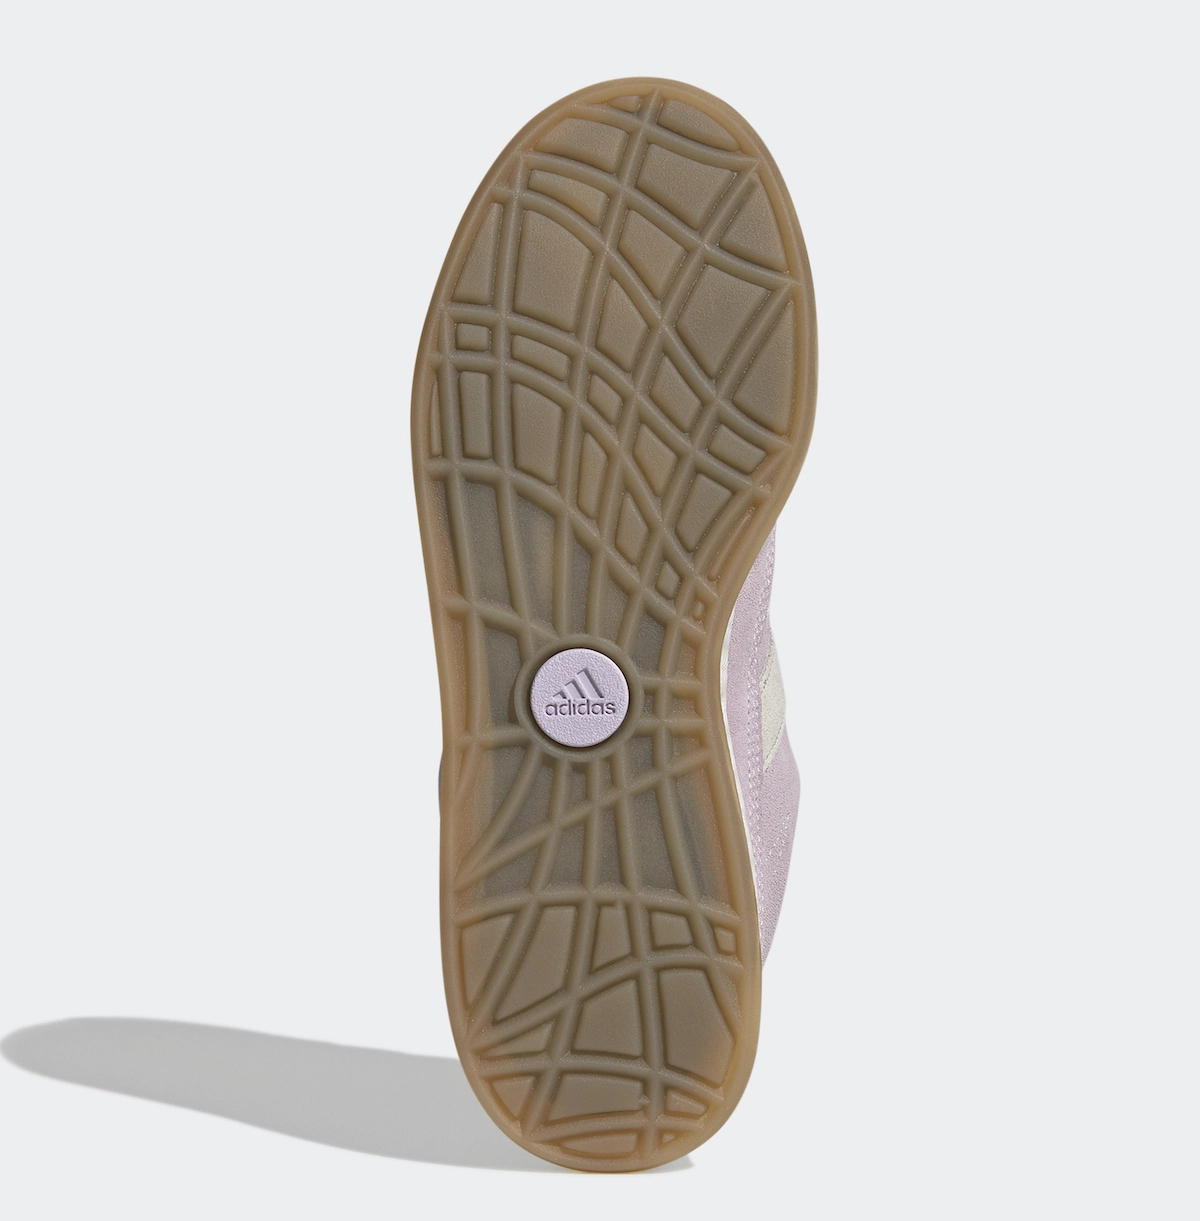 adidas Adimatic “Purple Tint” 即将推出-莆田高仿鞋